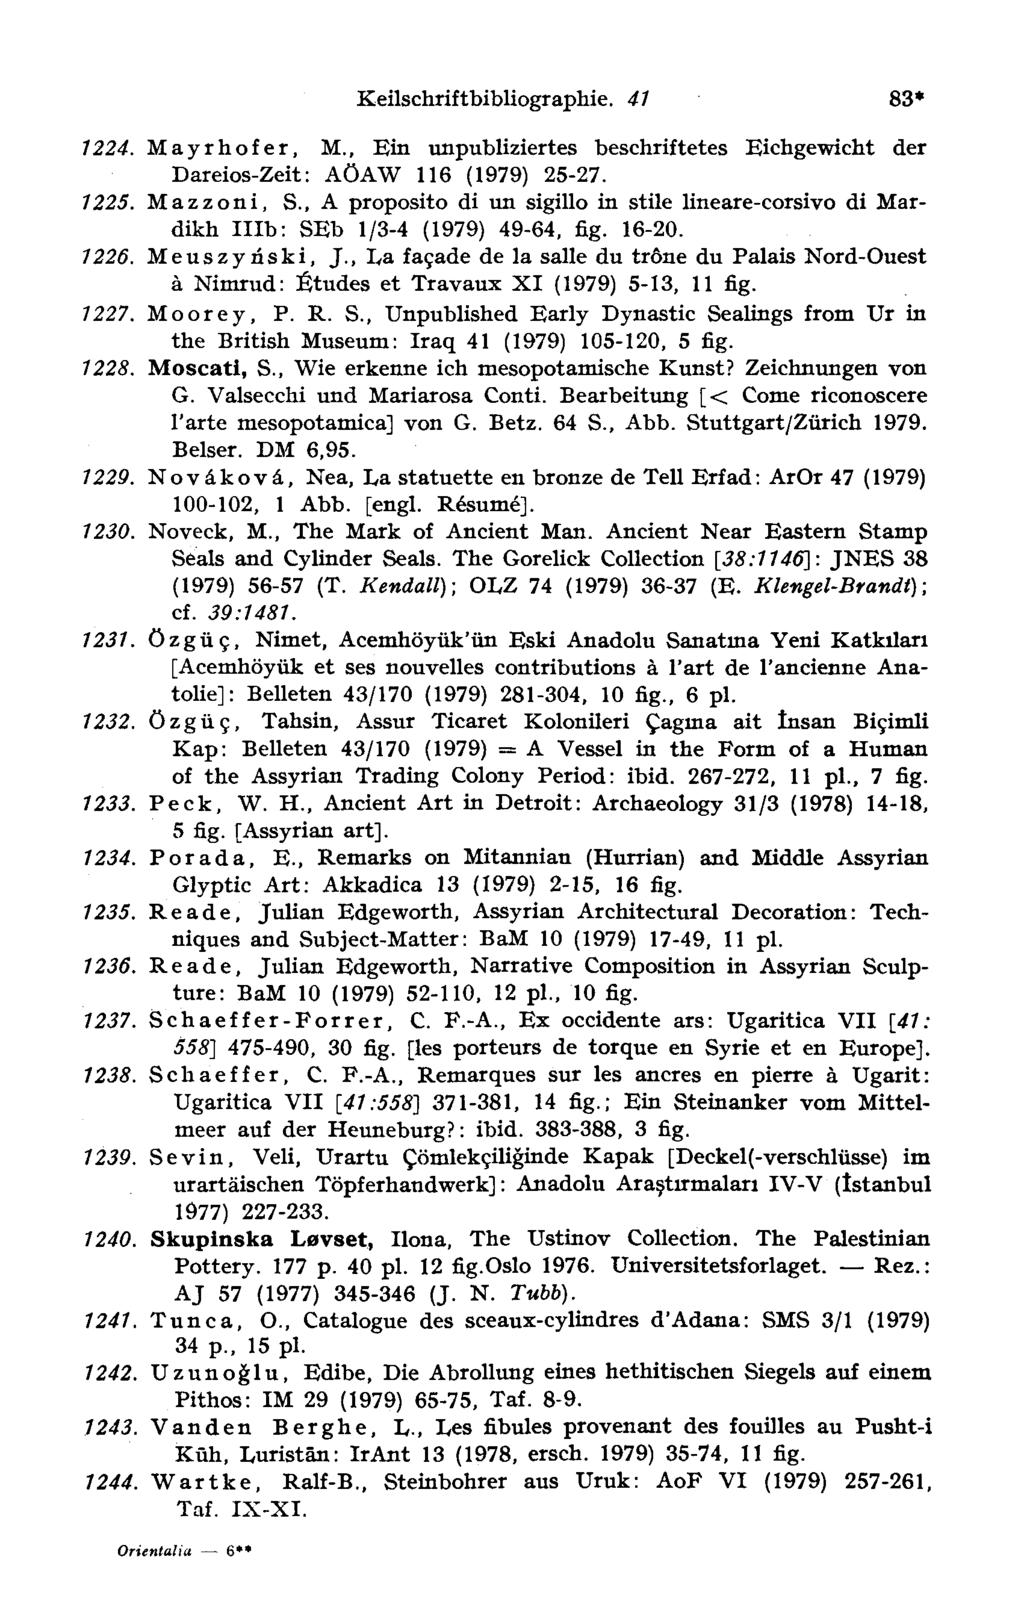 Keilschriftbibliographie. 4 1 83* 1224. Mayrhofer, M., Bin unpubliziertes beschriftetes Bichgewicht der Dareios-Zeit: AÖAW 116 (1979) 25-27. 1225. Mazzoni, S.